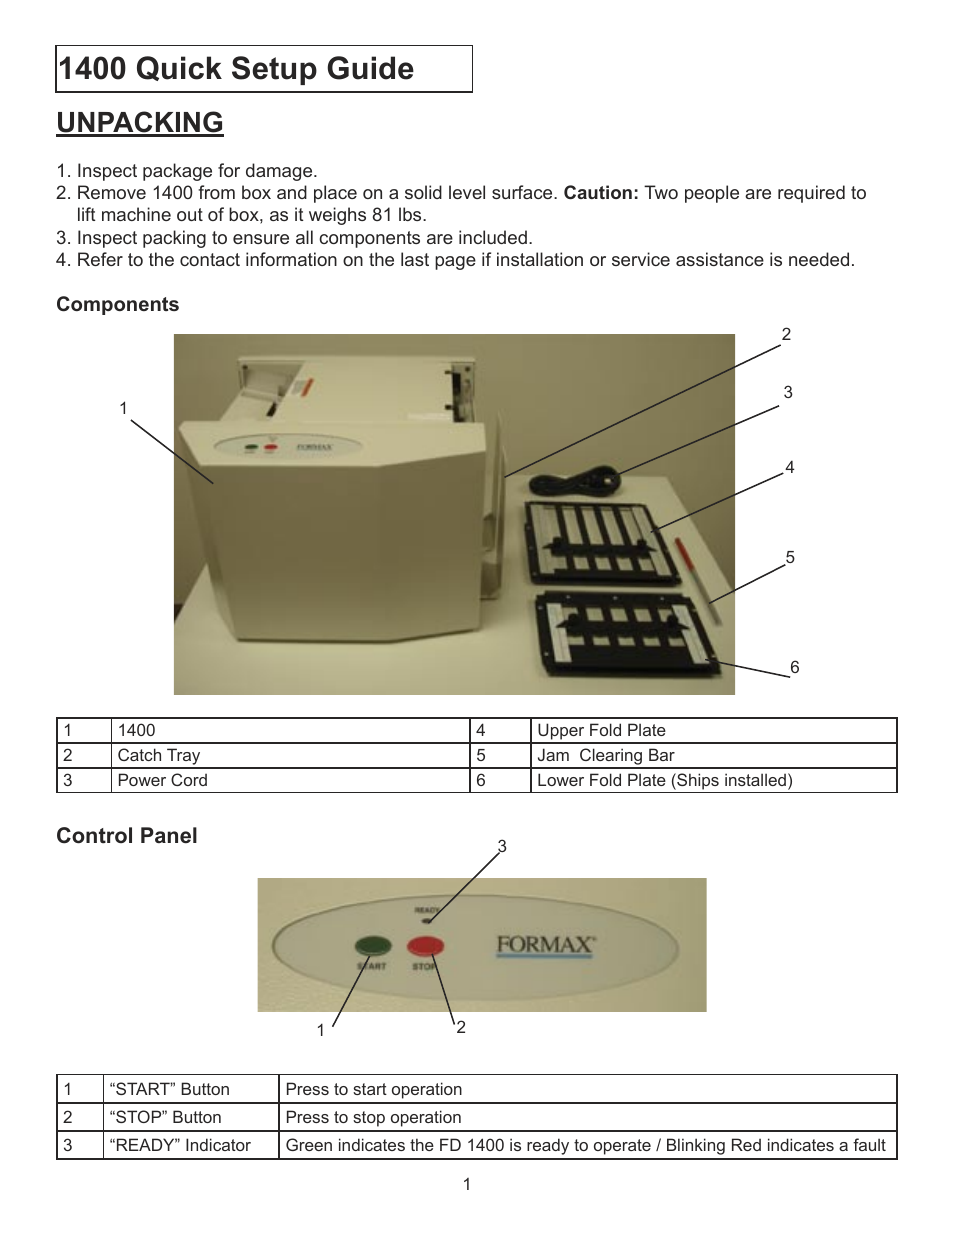 FD 1400 Quick Setup Guide & Test Sheet